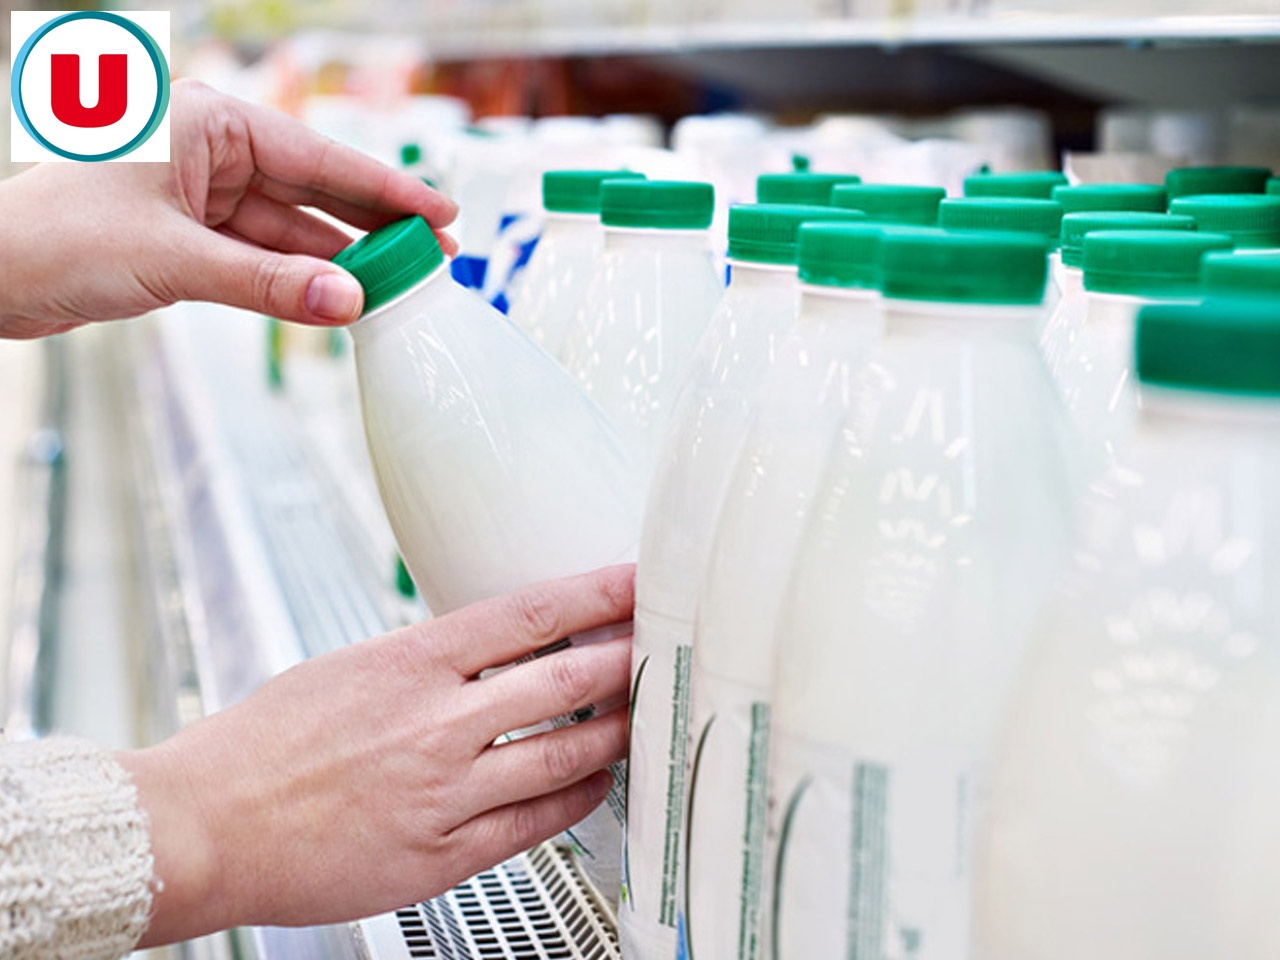 Système U conclut un accord de revalorisation du prix du lait avec la coopérative Sodiaal